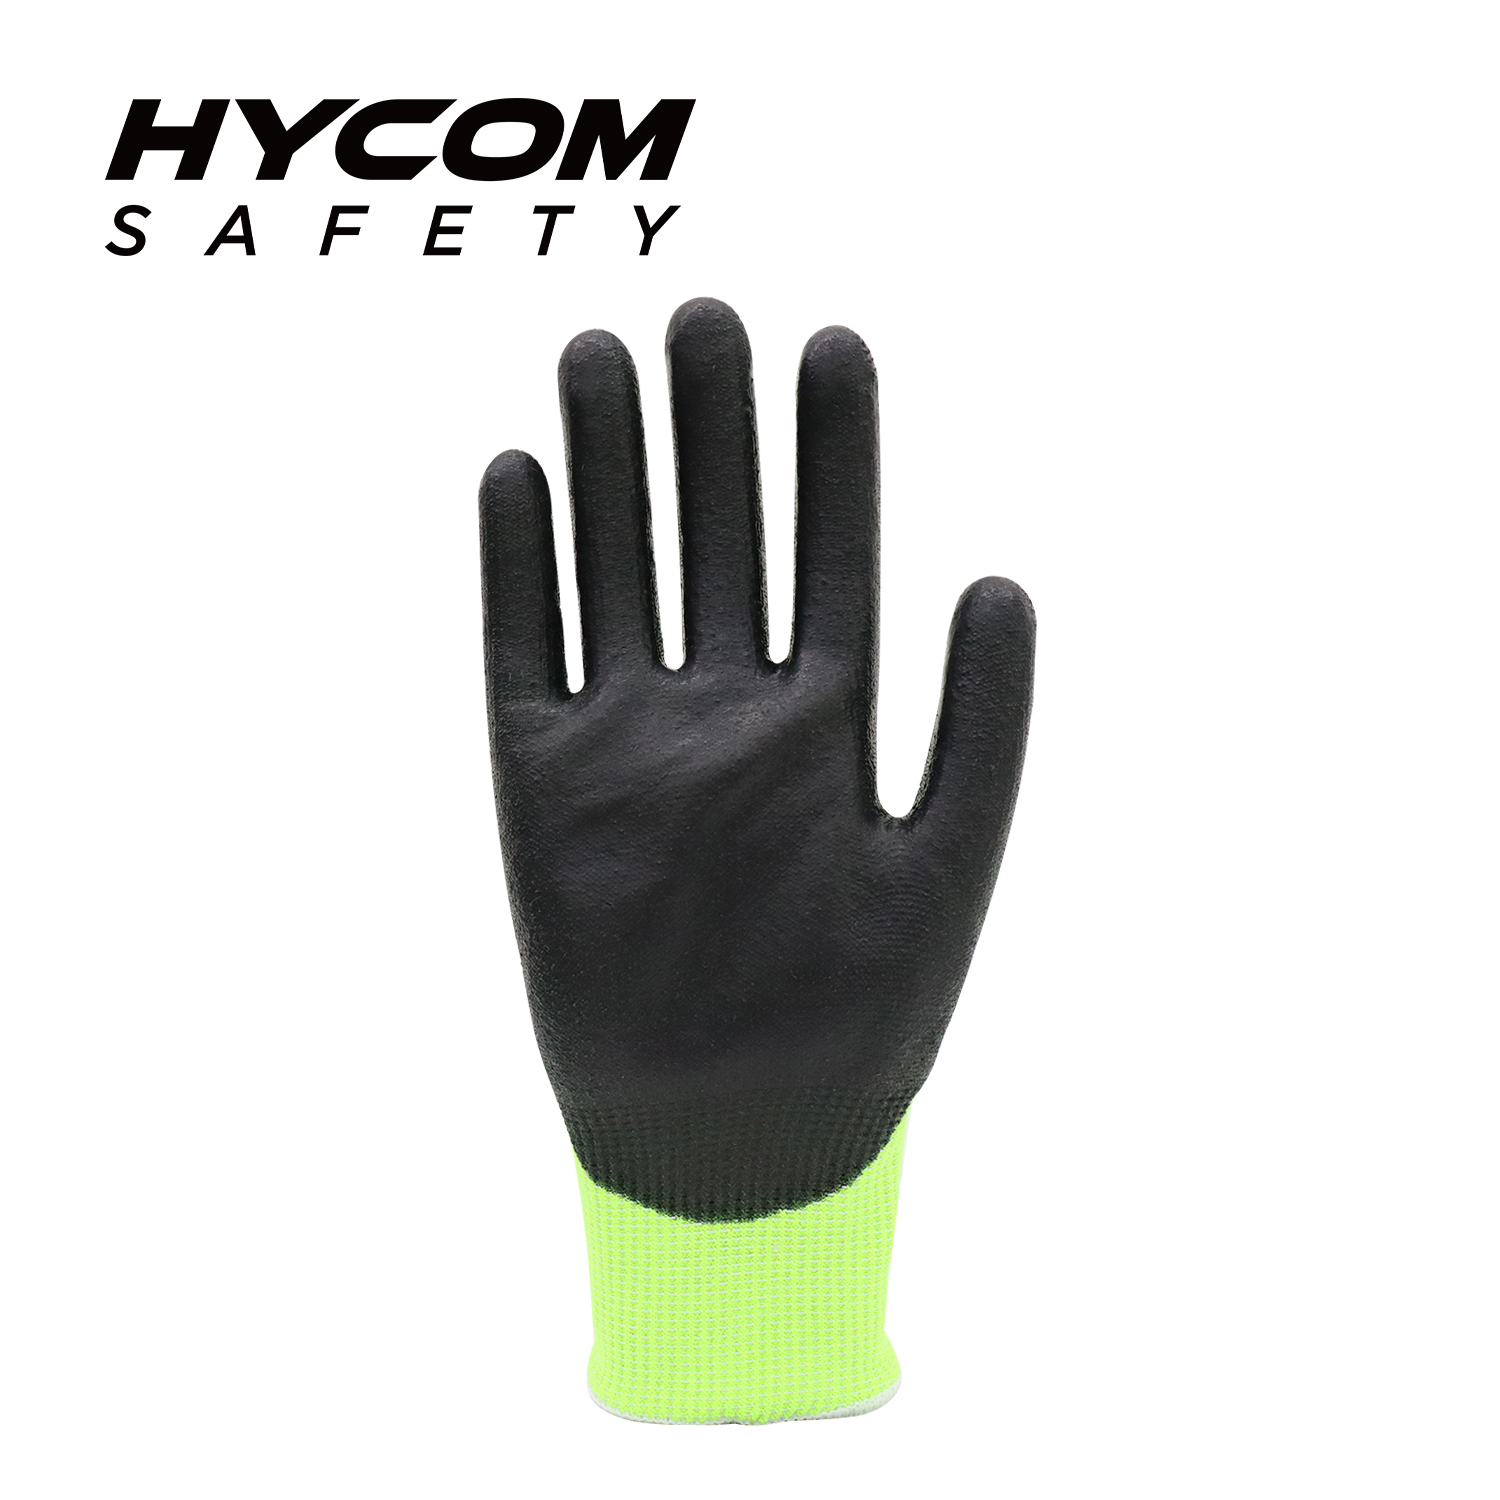 HYCOM Breath-cut 15G ANSI 4 Cut Resistant Glove with Palm Polyurethane Coating